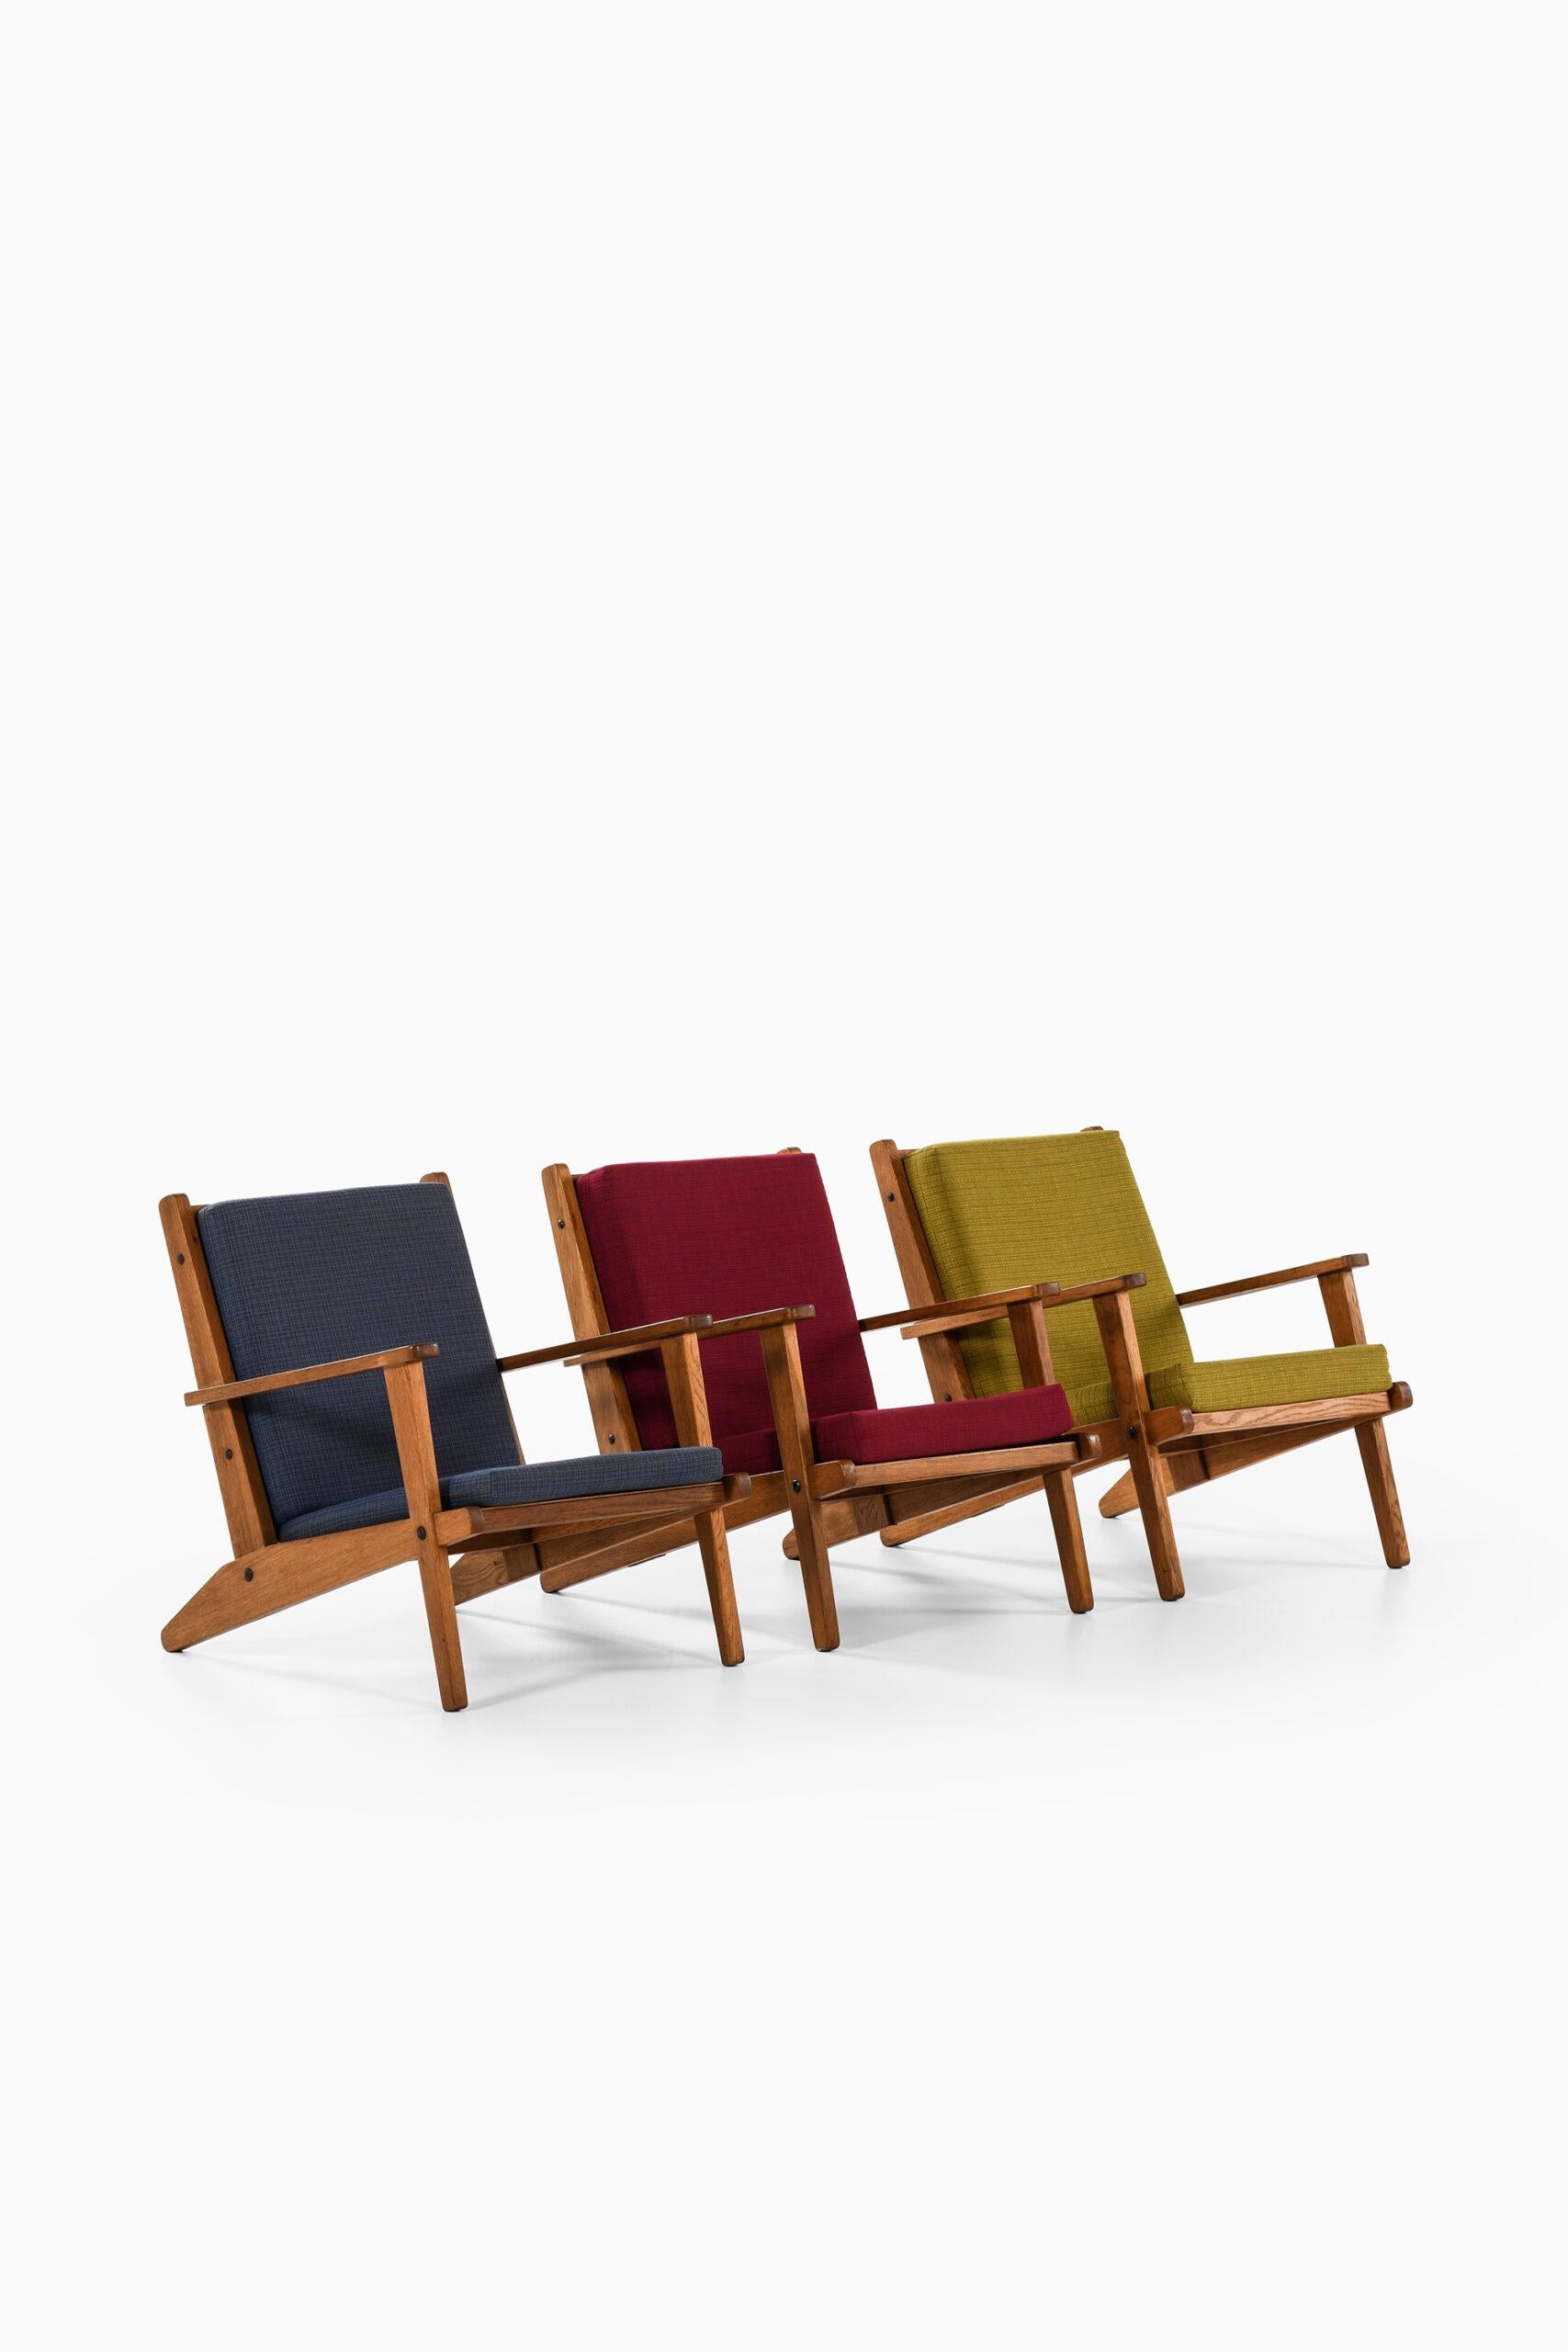 3 fauteuils rares conçus par Poul Hansen. Produit au Danemark.